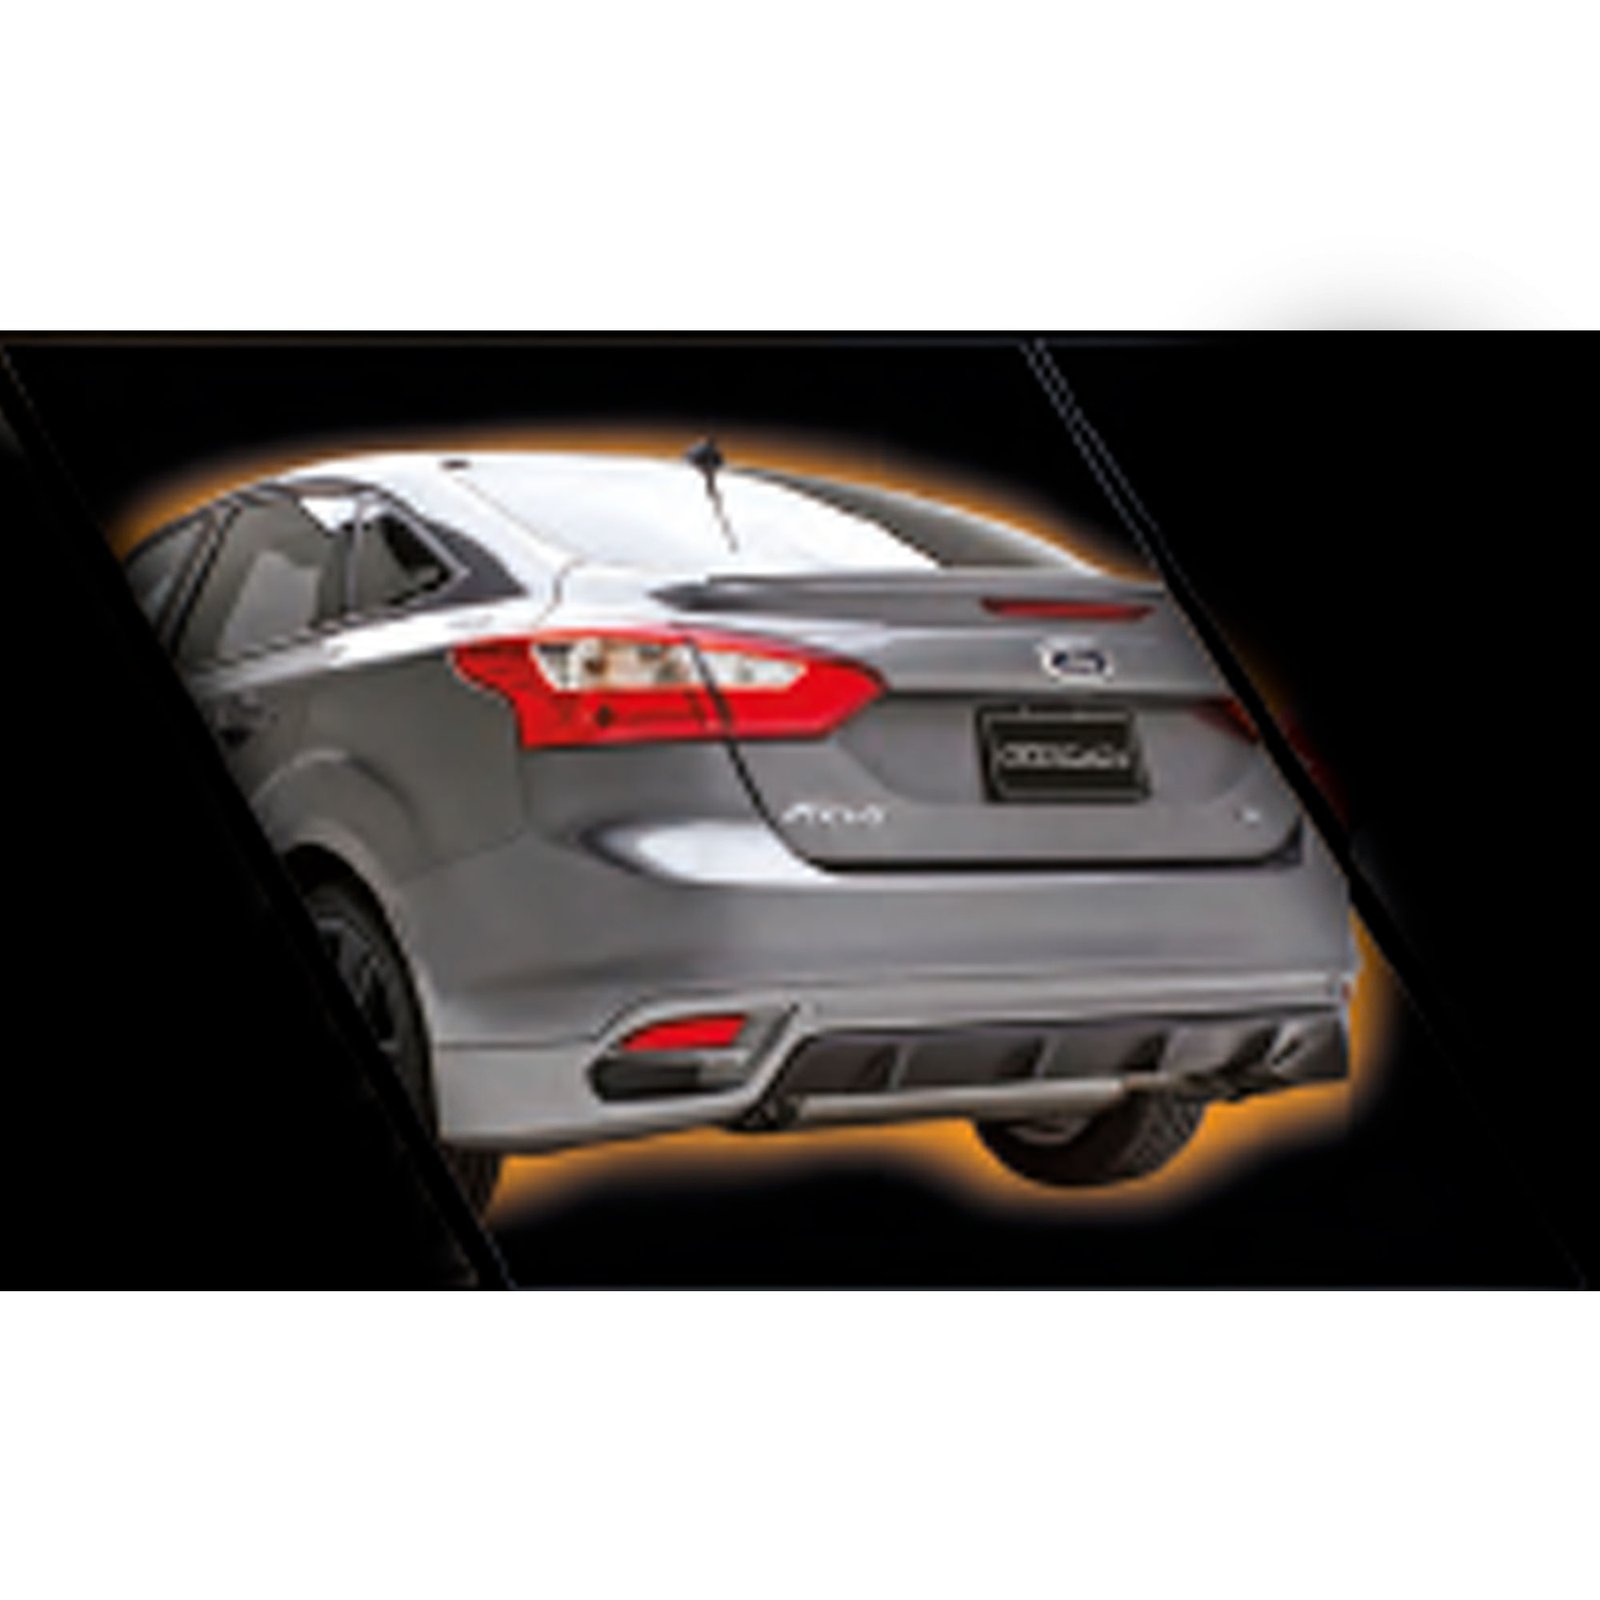 Bodykit Con Alerón De Bajo Perfil para Ford Focus Sedan (2011-2014)